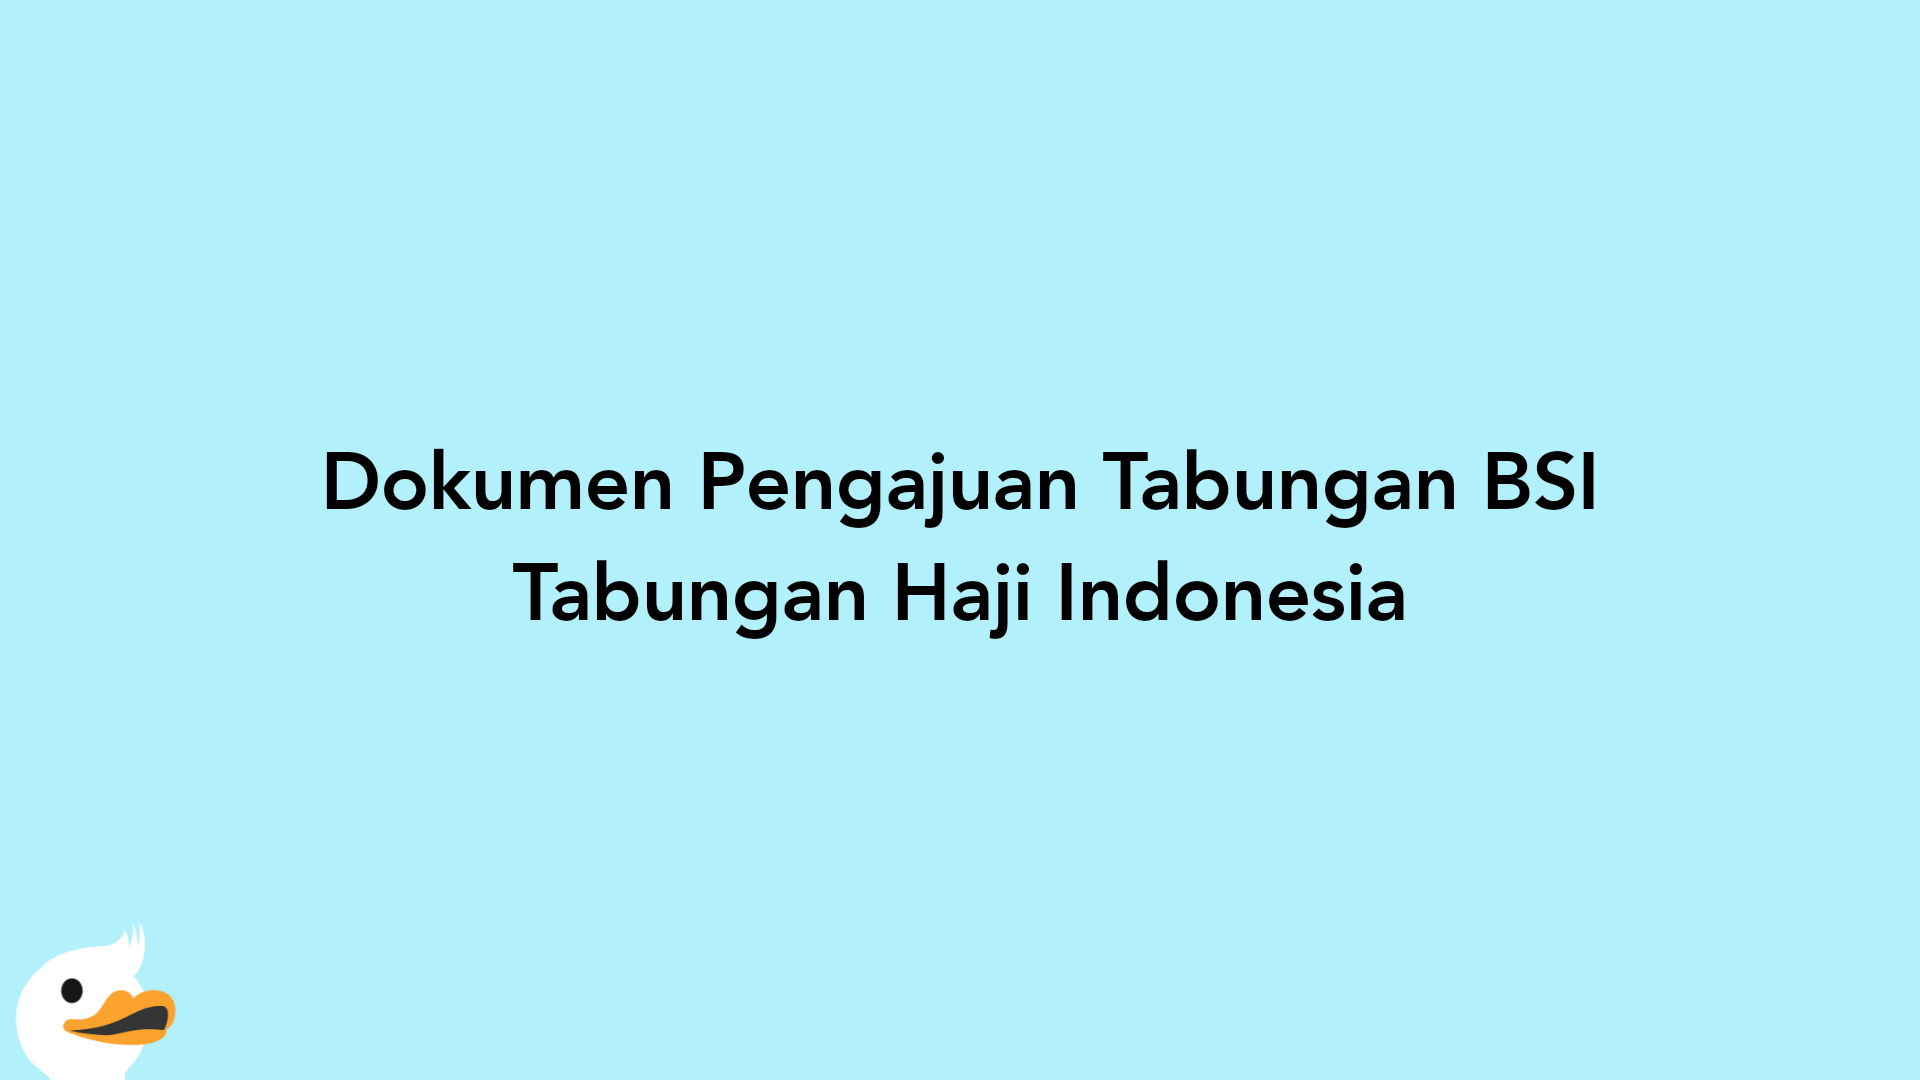 Dokumen Pengajuan Tabungan BSI Tabungan Haji Indonesia